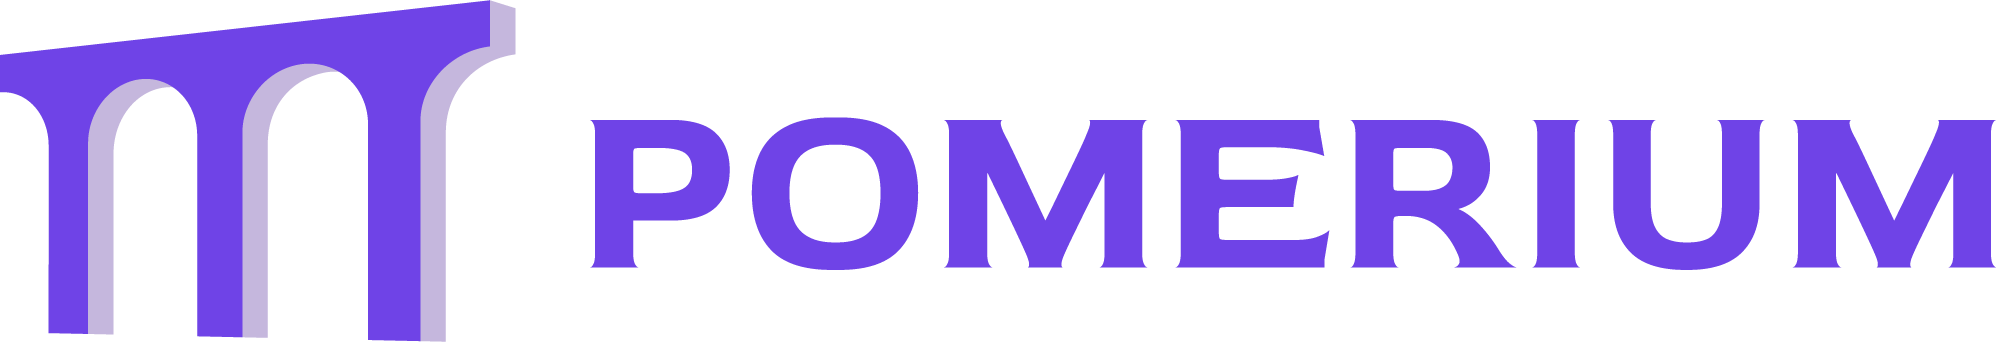 pomerium logo